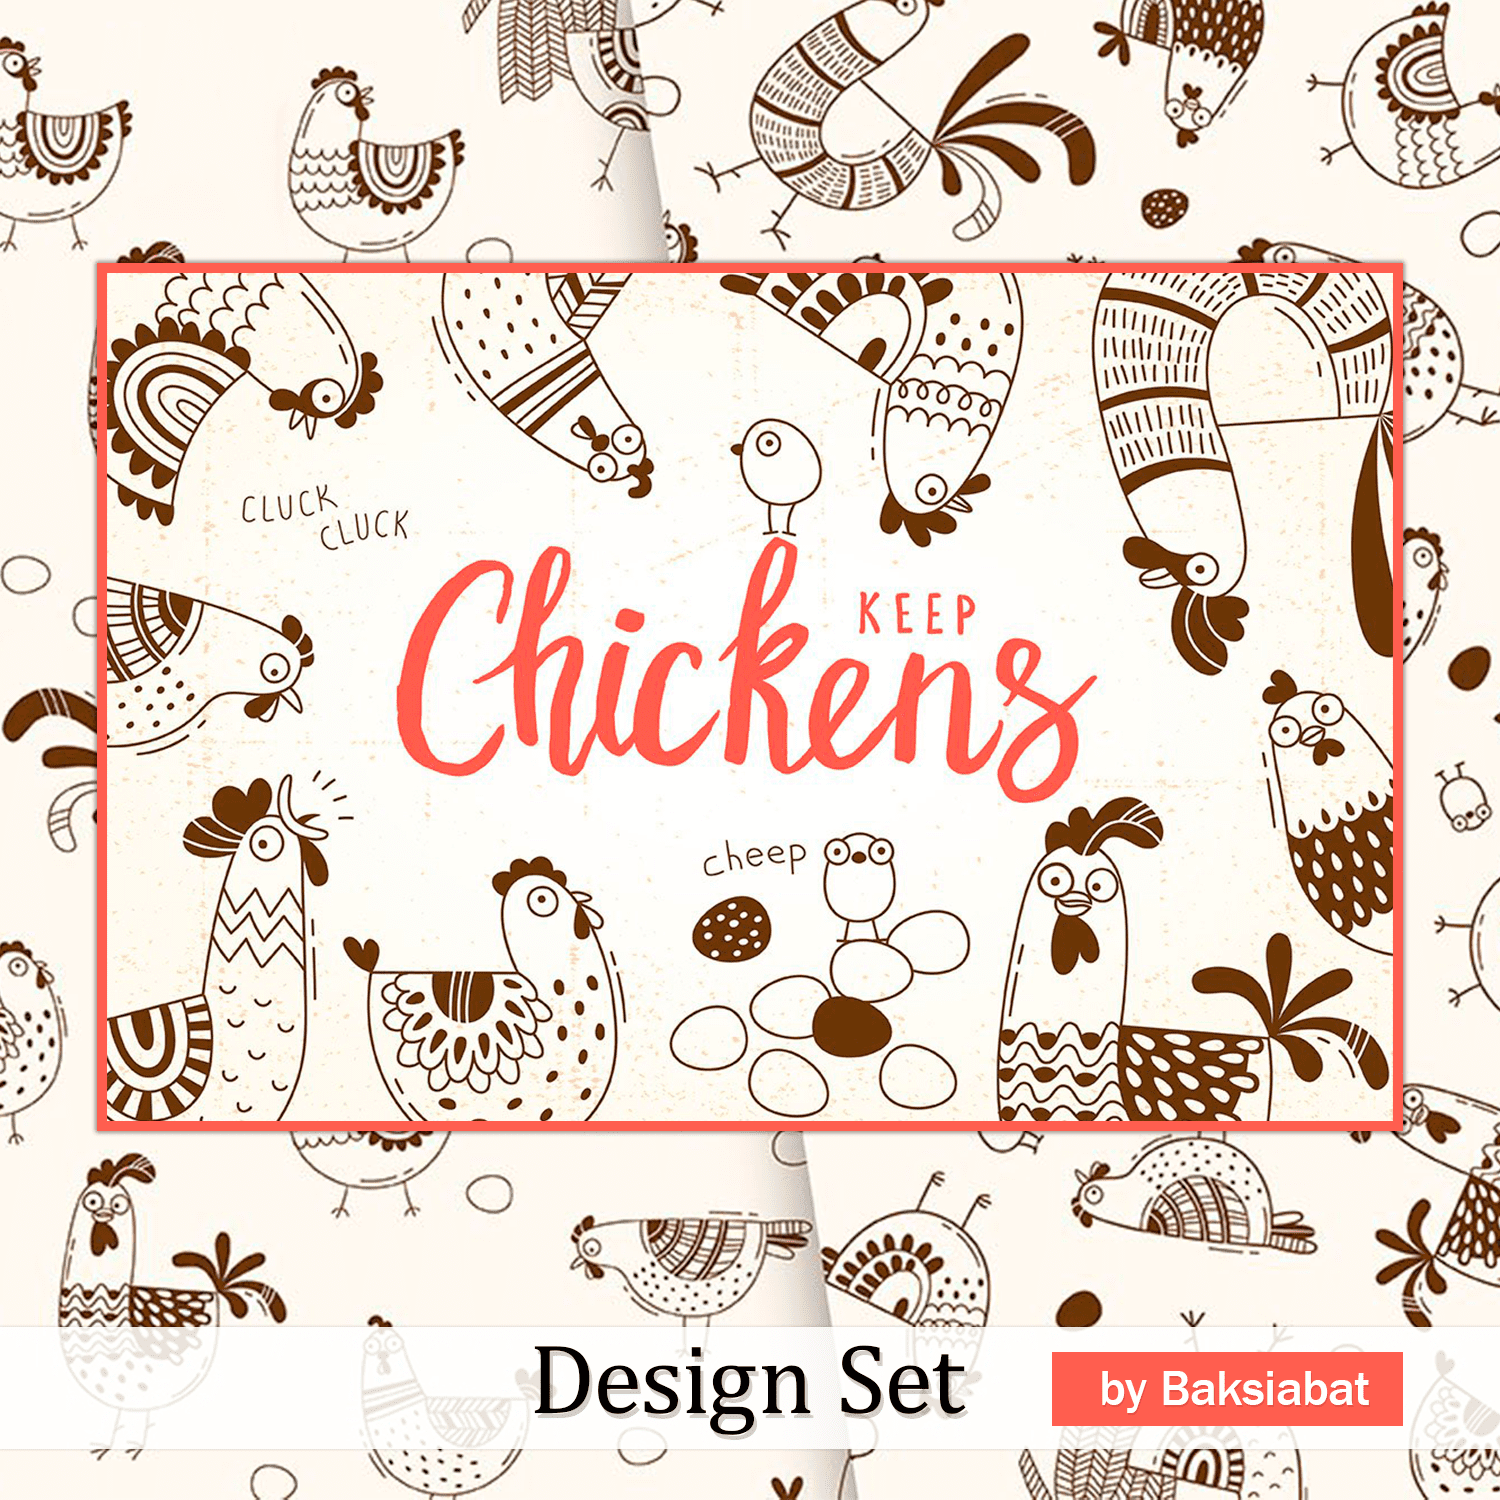 Keep Chicken - Design Set.